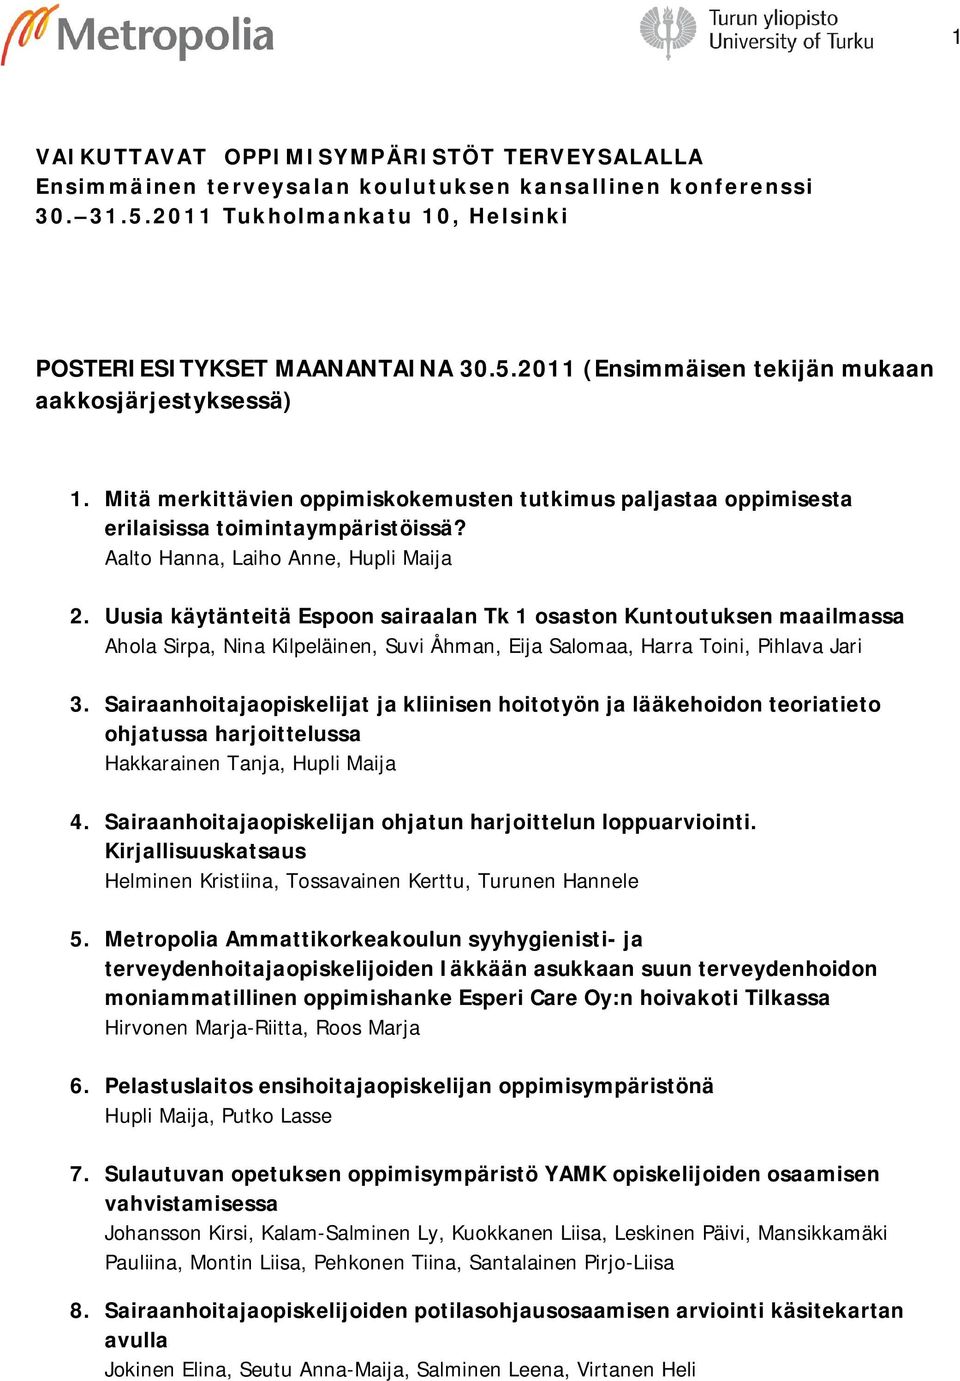 Uusia käytänteitä Espoon sairaalan Tk 1 osaston Kuntoutuksen maailmassa Ahola Sirpa, Nina Kilpeläinen, Suvi Åhman, Eija Salomaa, Harra Toini, Pihlava Jari 3.